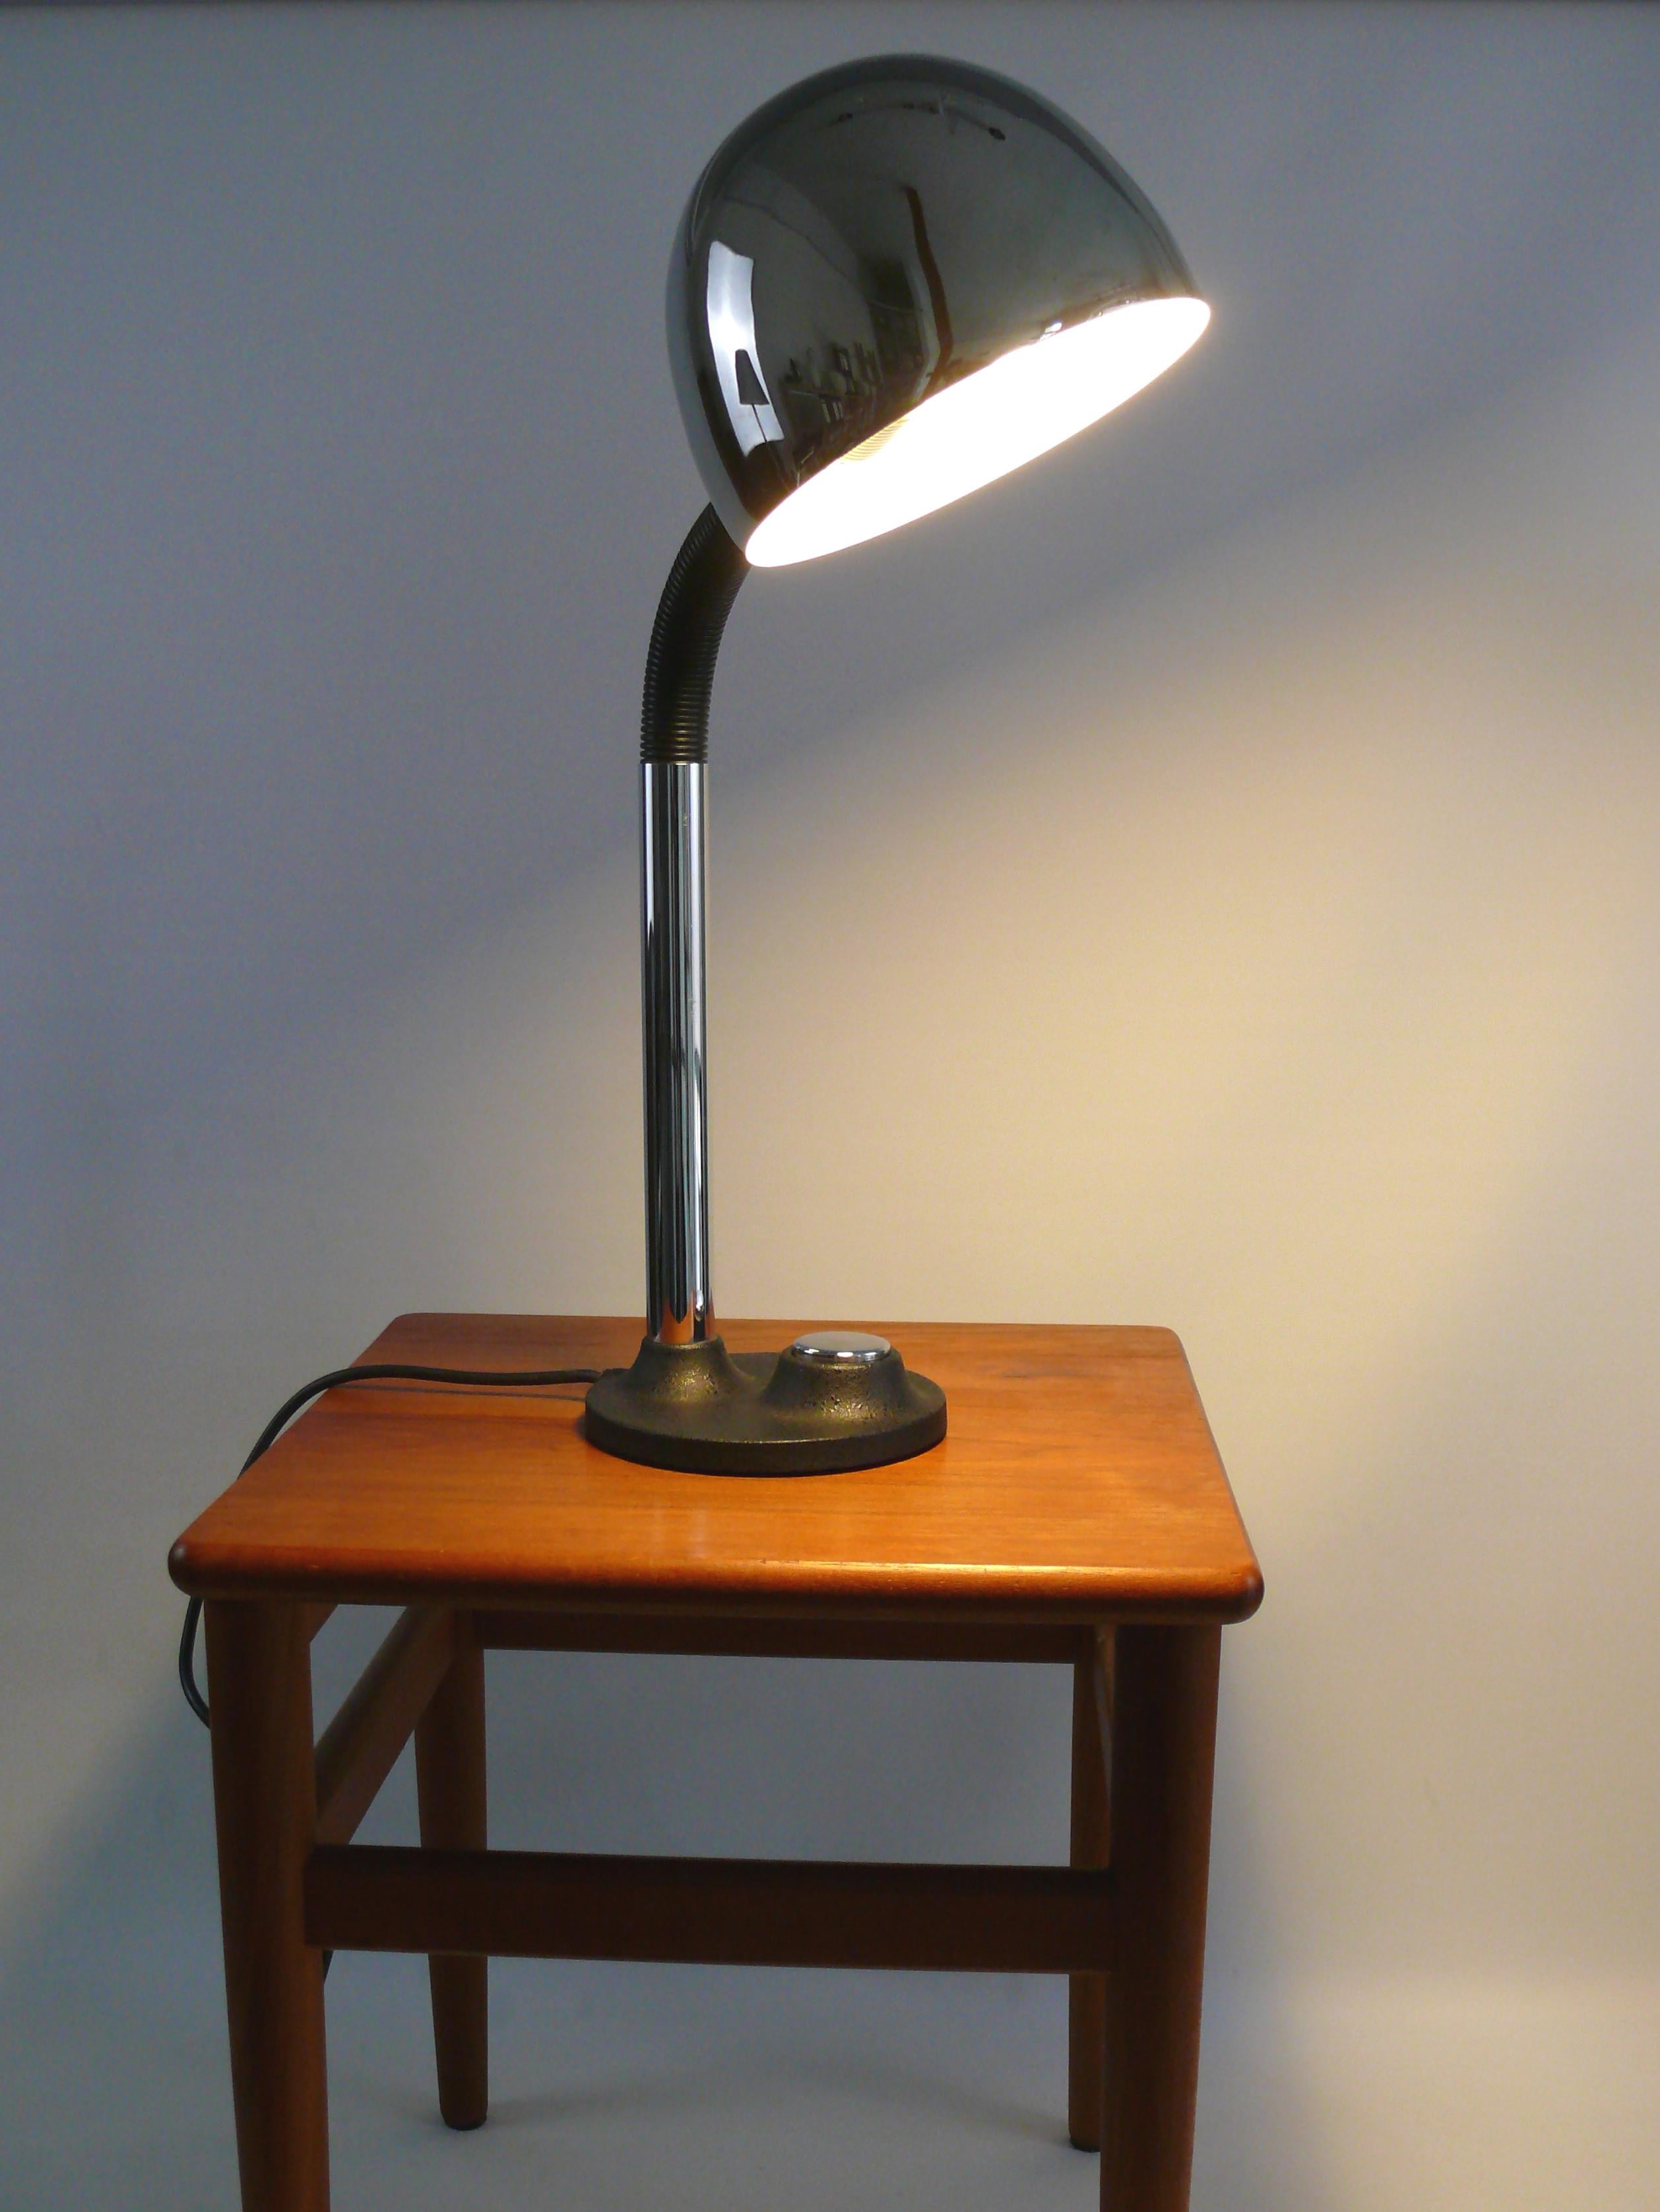 Sehr gut erhaltene, große Schreibtischlampe aus den 1960er - 1970er Jahren von Egon Hillebrand. Die Leuchte ist aus schwarz lackiertem Metall und verchromten Elementen sowie einem kunststoffbeschichteten Schwanenhals gefertigt. Die Schreibtischlampe